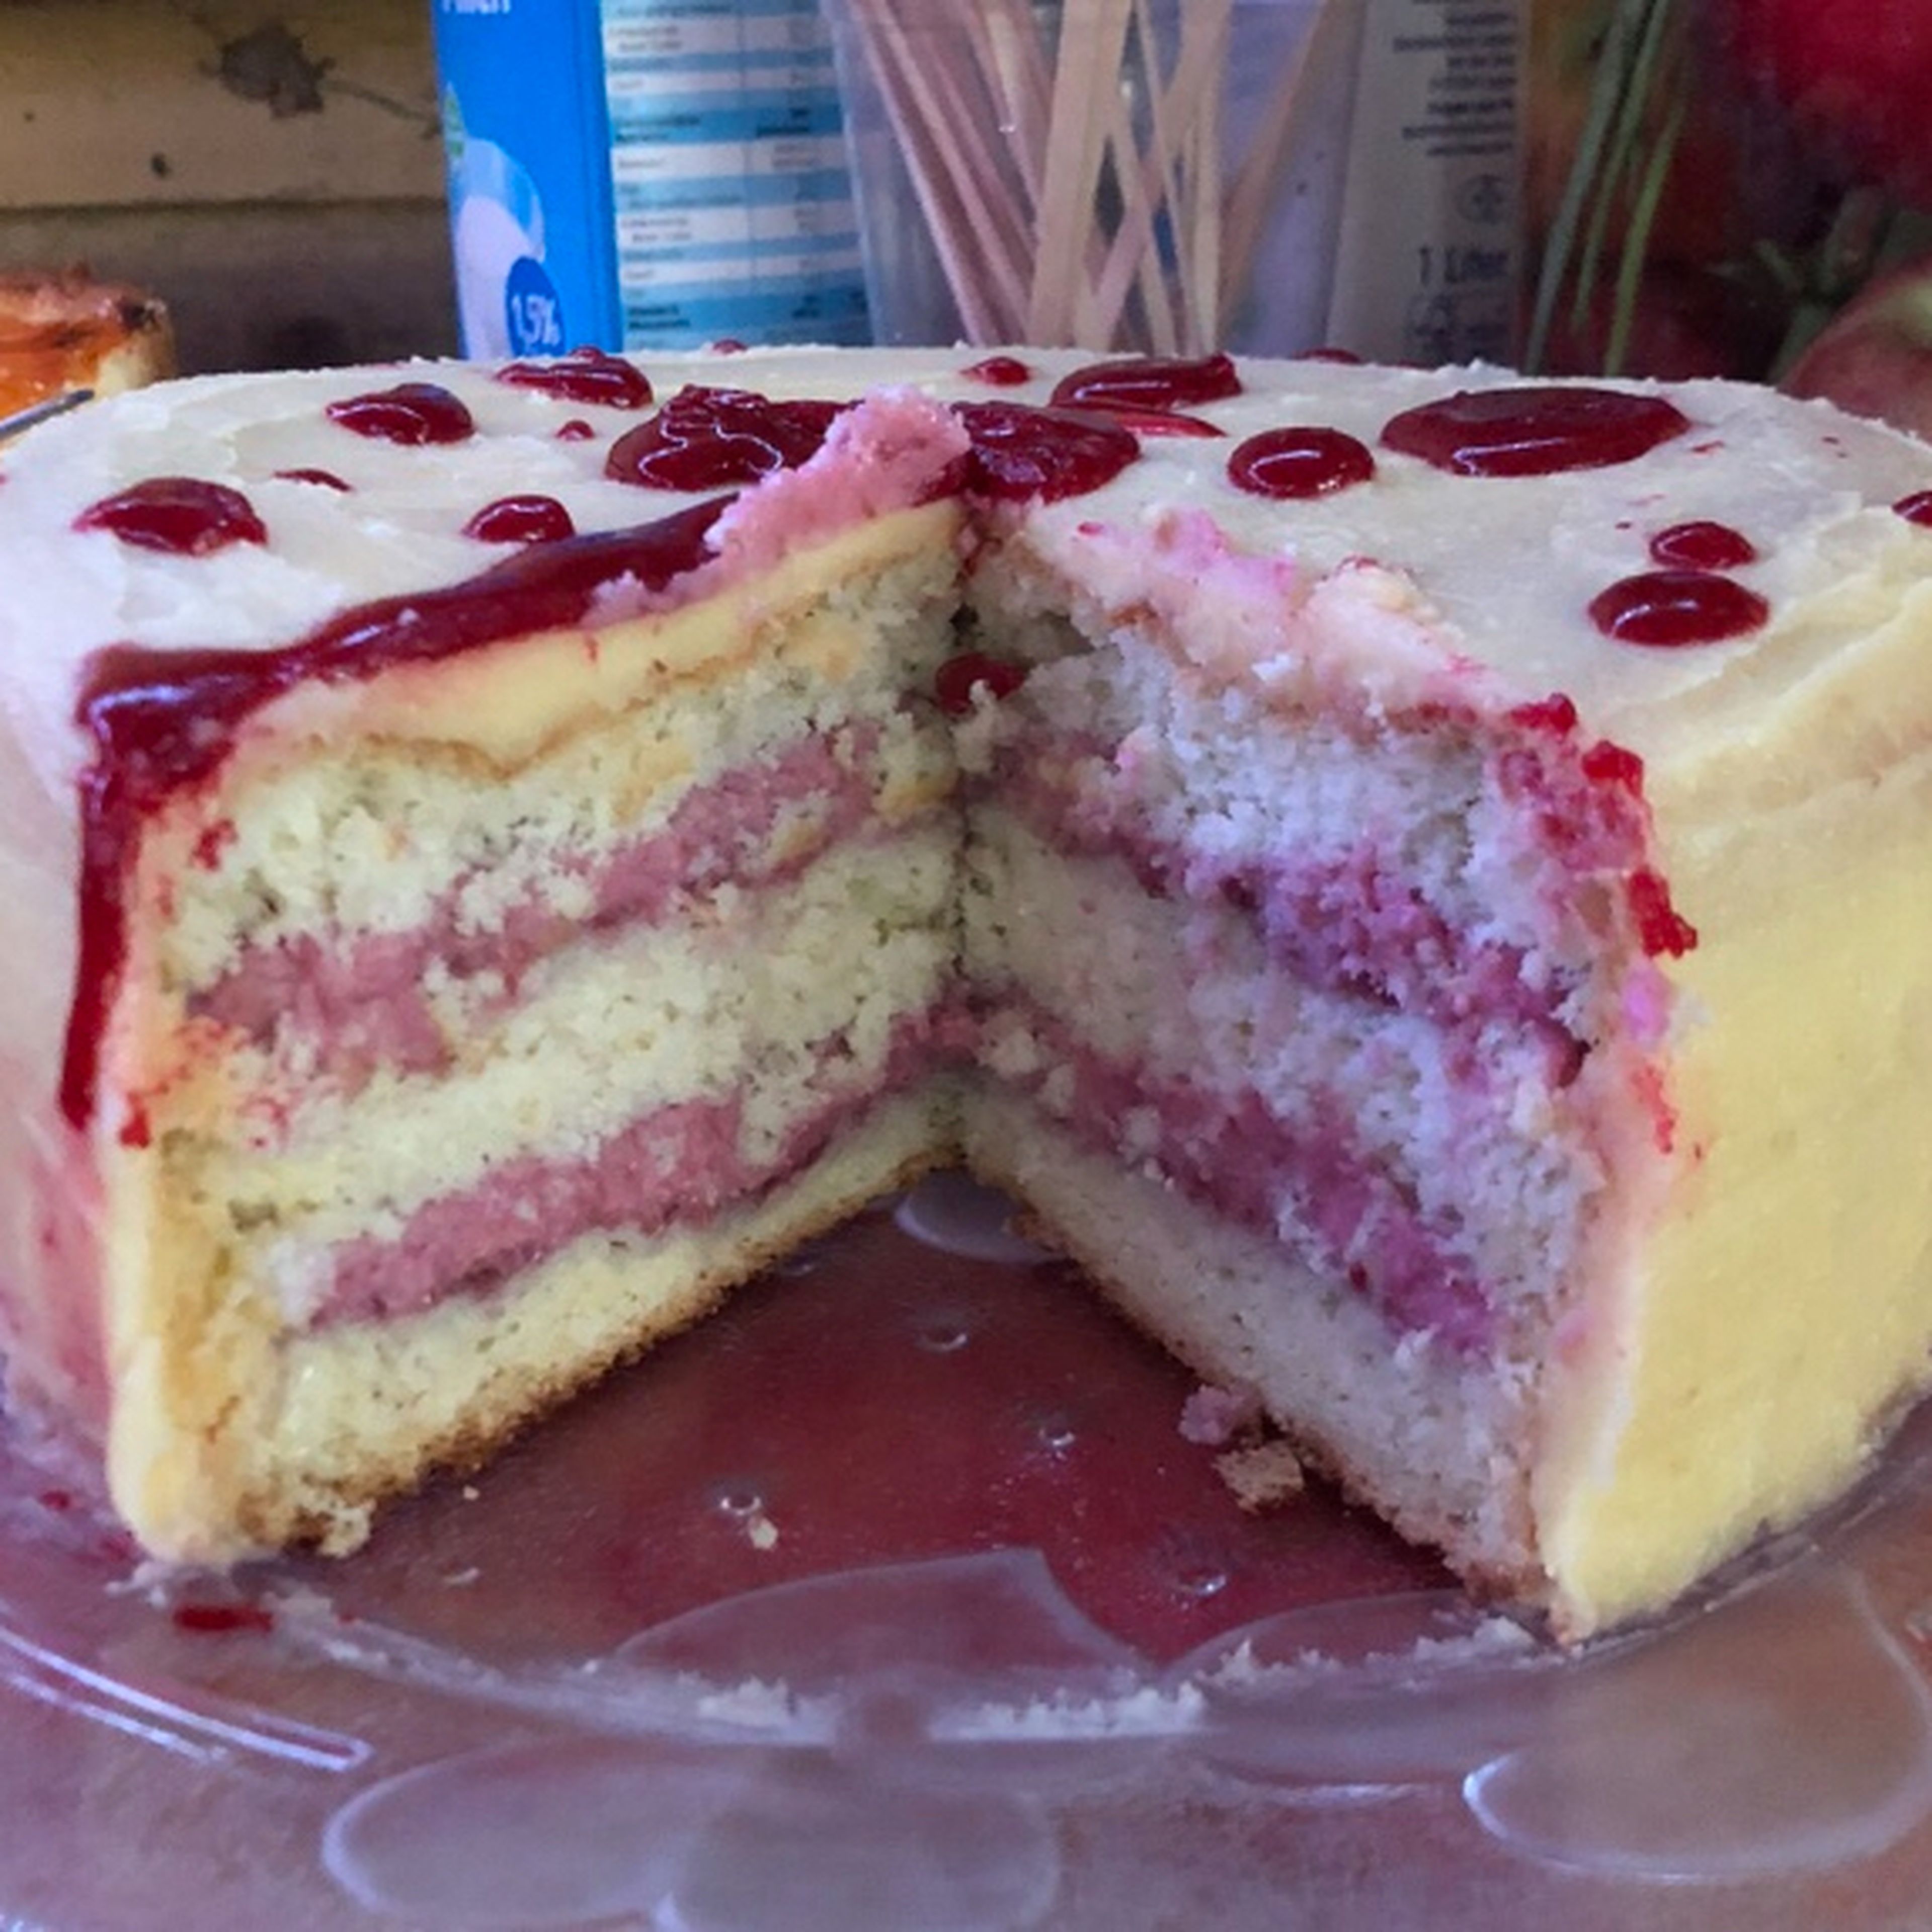 Angeschnitten sieht der Kuchen so aus: